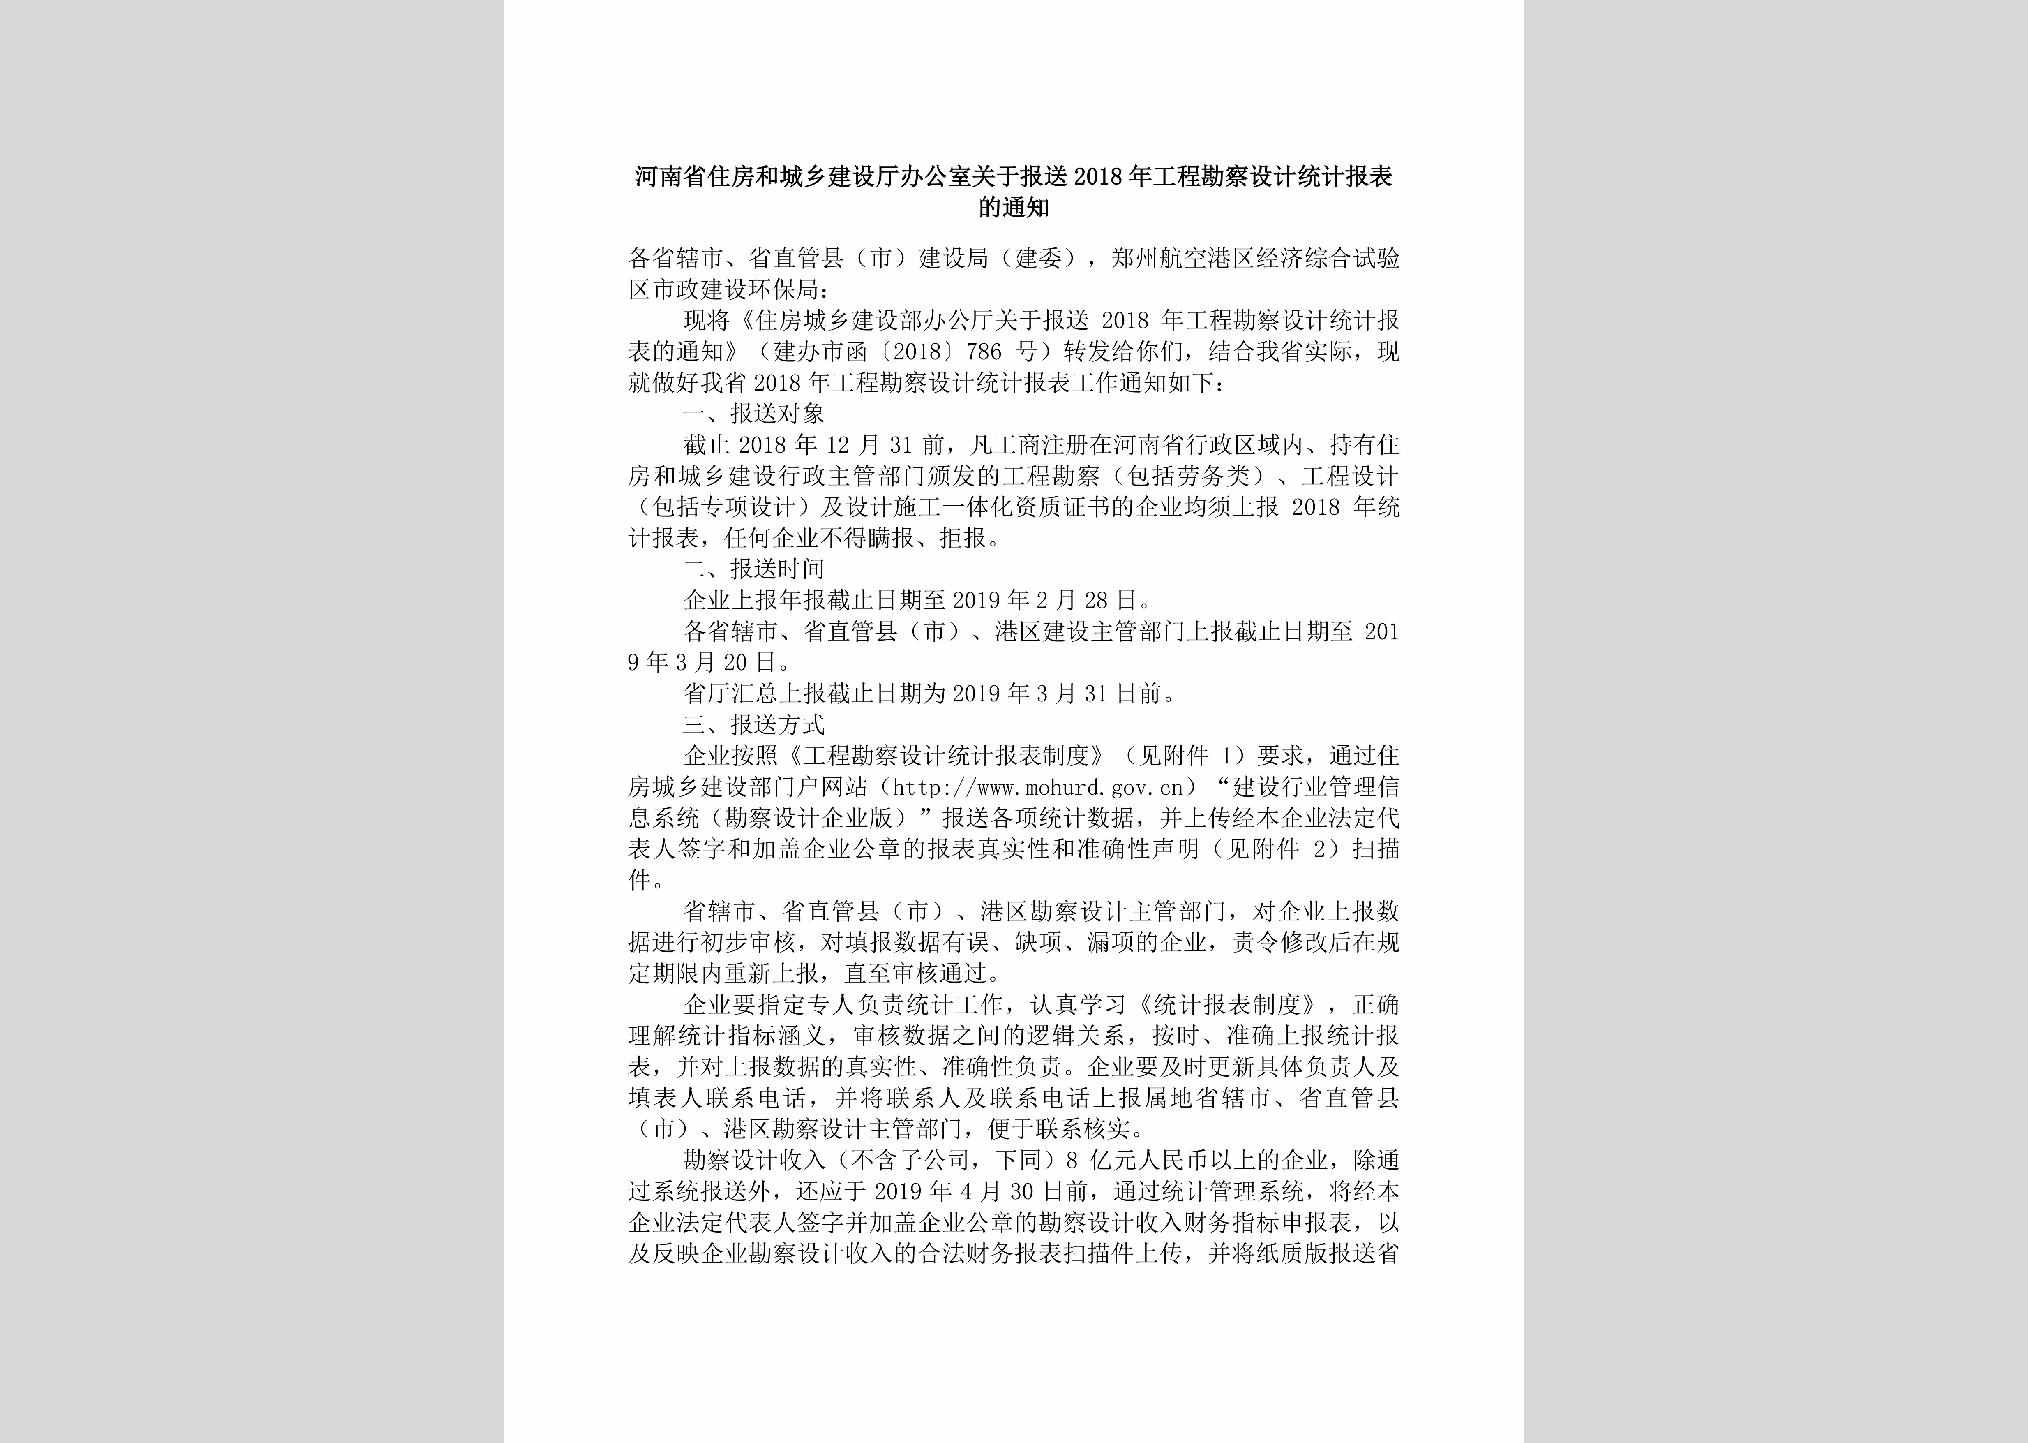 HN-GCKCSJTJ-2019：河南省住房和城乡建设厅办公室关于报送2018年工程勘察设计统计报表的通知